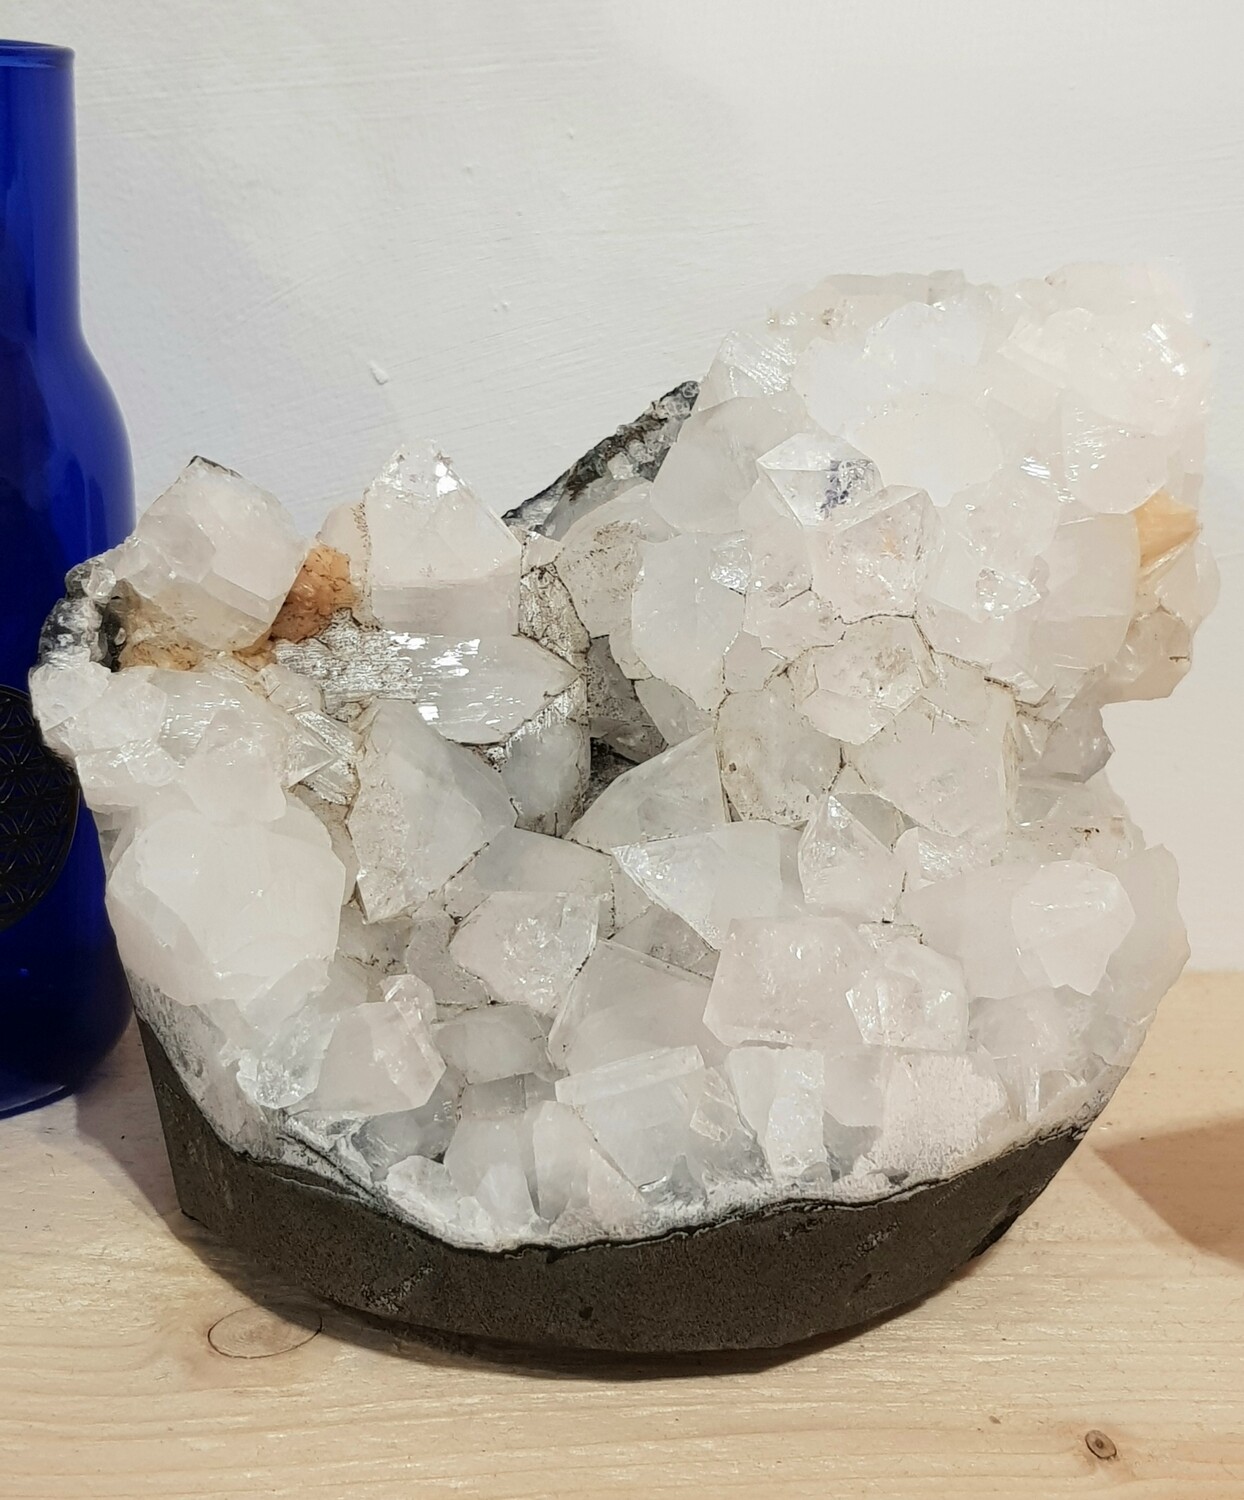 Large Apophyllite Crystal